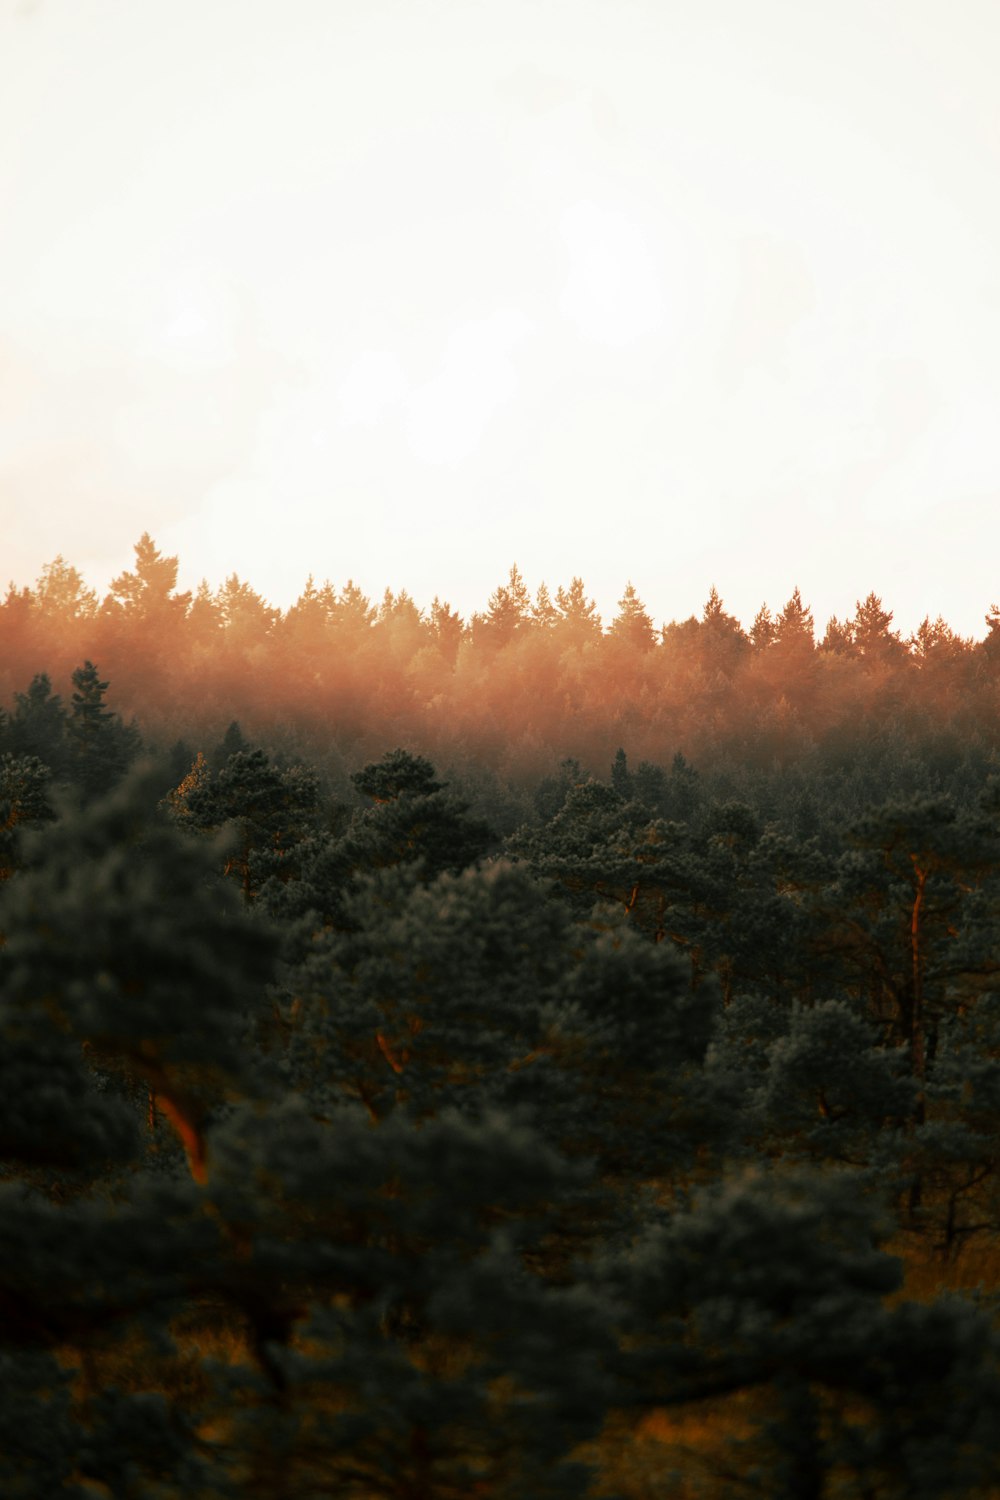 Ein Wald voller Bäume unter einem bewölkten Himmel